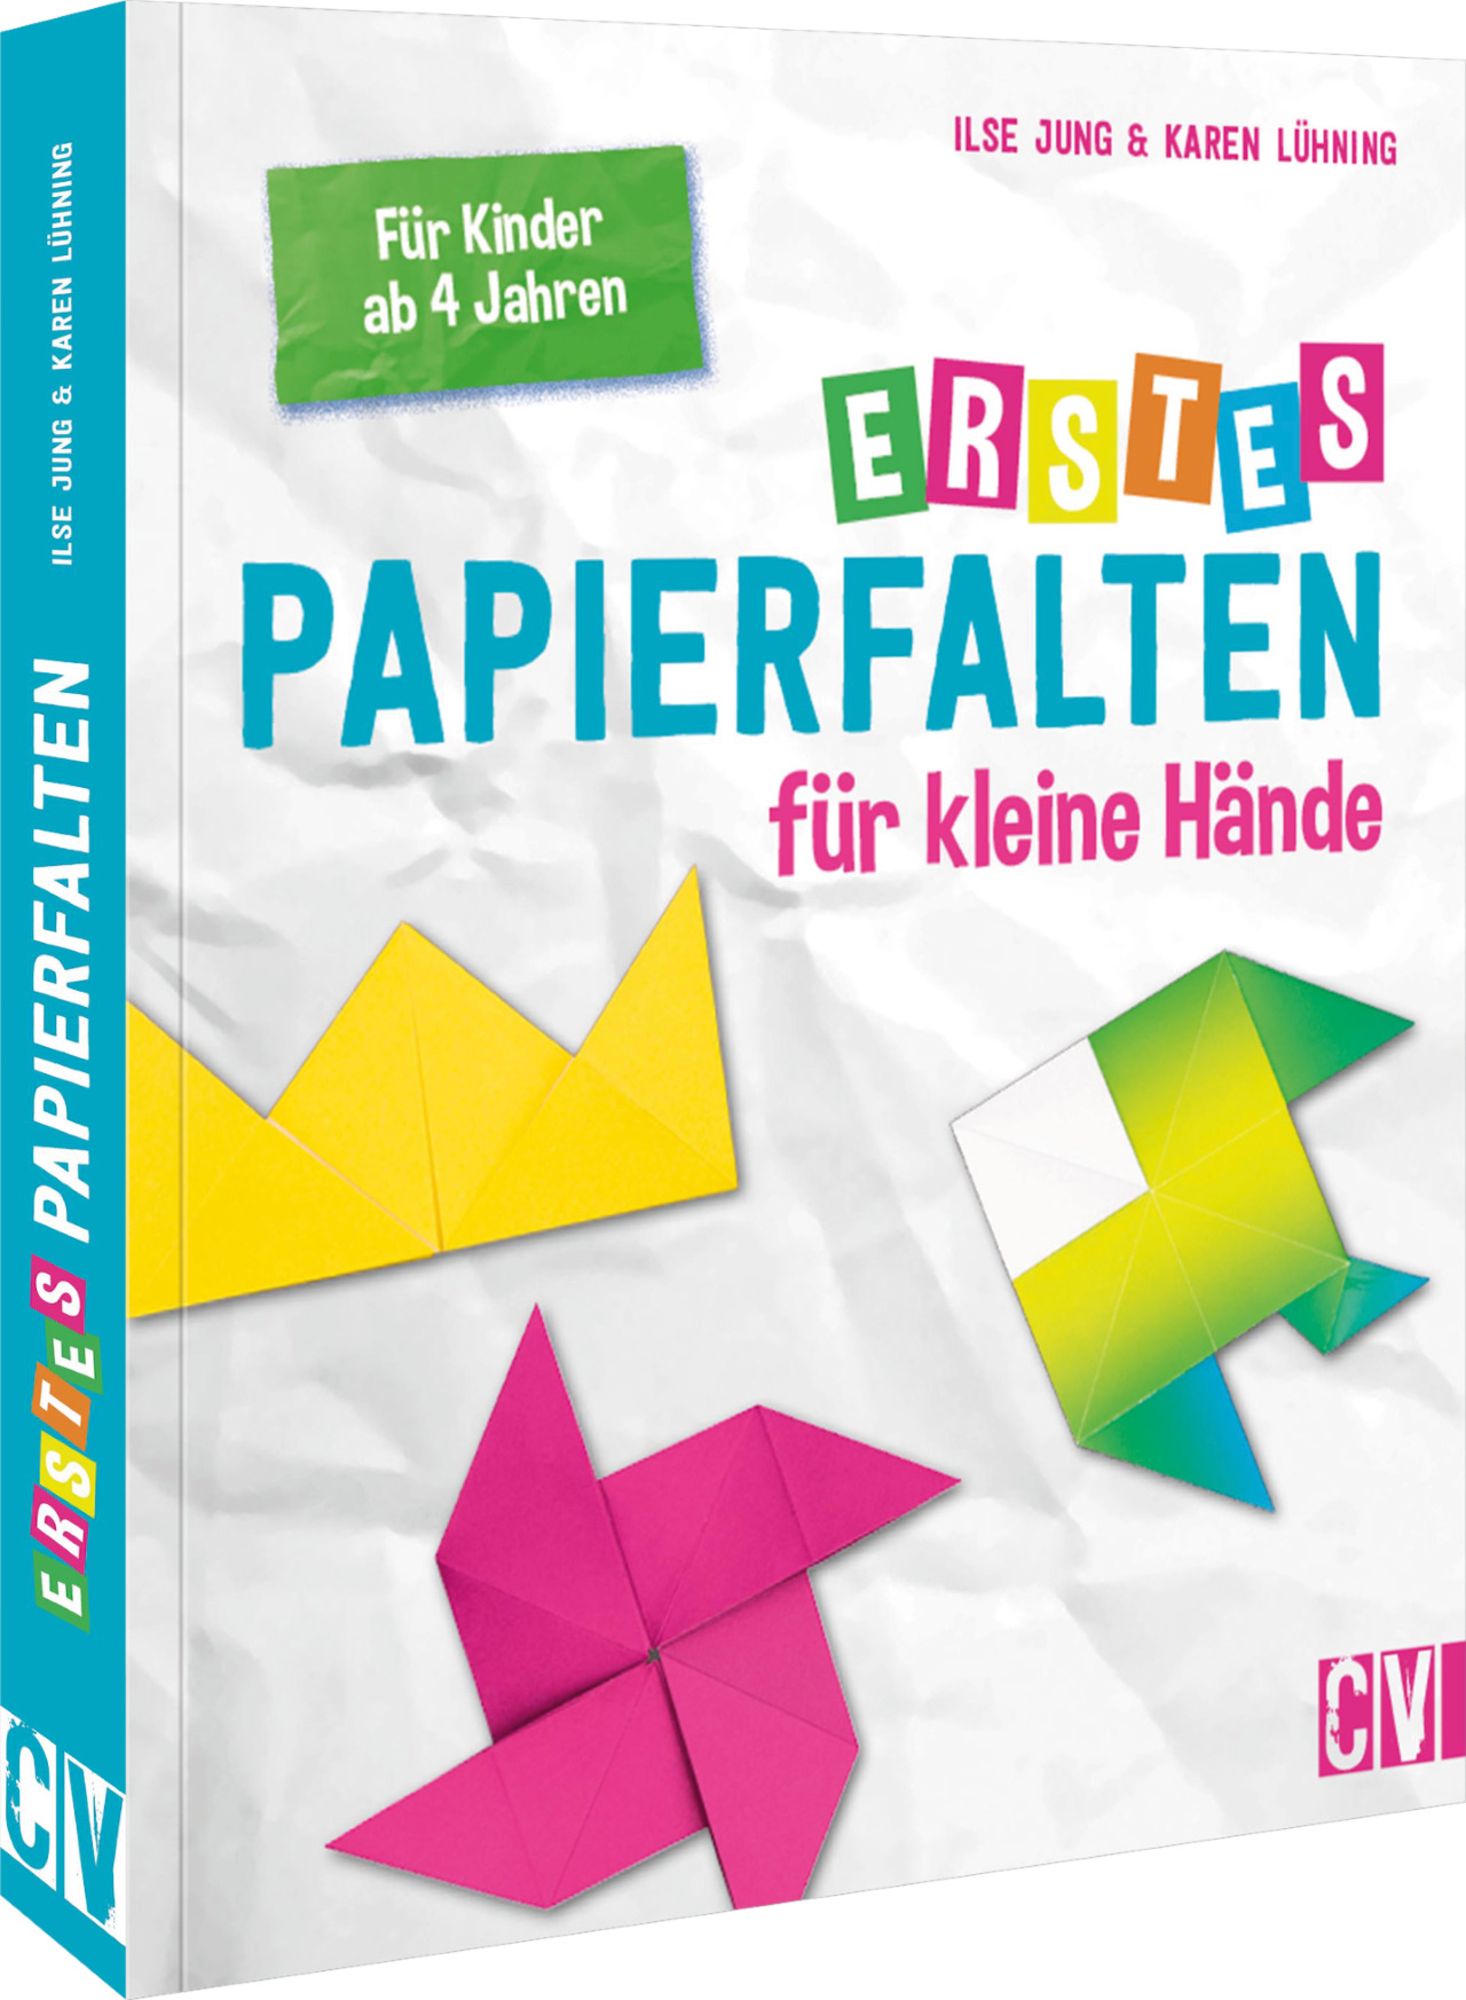 https://images.thalia.media/-/BF2000-2000/9b88949d50b14202a5e457a2f056fb07/erstes-papierfalten-fuer-kleine-haende-taschenbuch-ilse-jung.jpeg